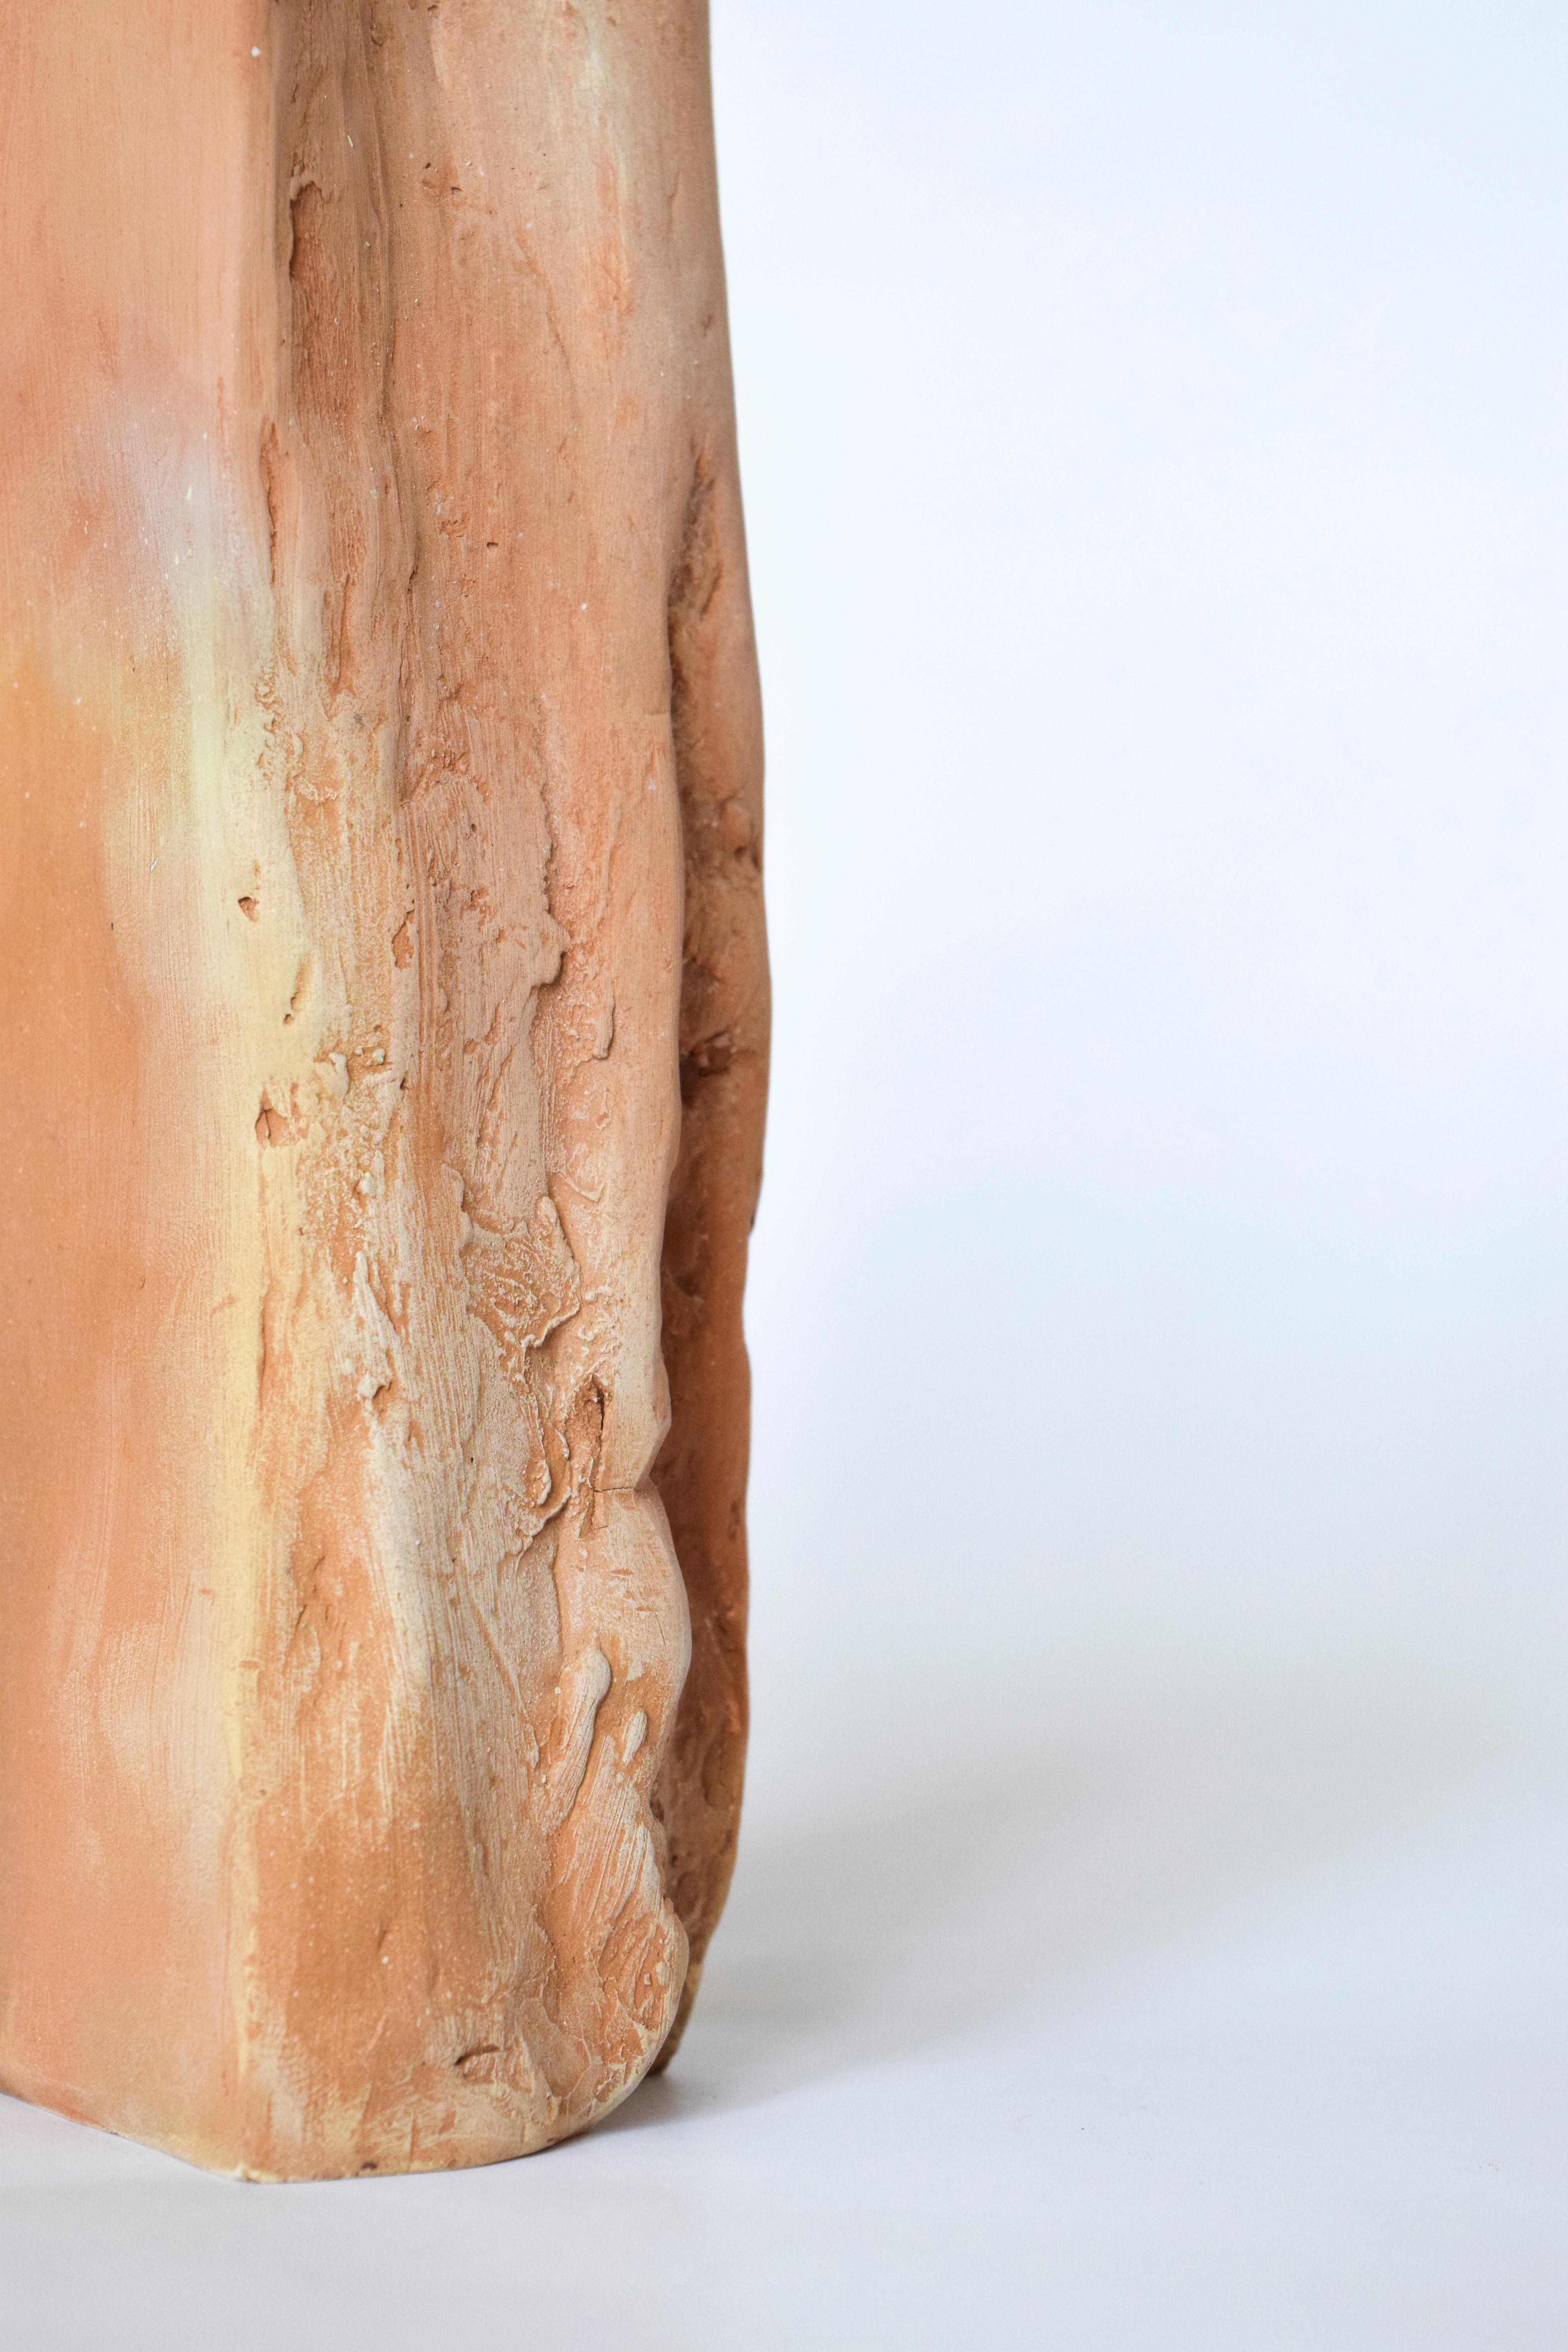 Orgamétrie - Vase organique unique, Aurore
Mesures : 17 x 5,5 x 5 cm

L'orgamétrie est la rencontre du dessin géométrique humain et des formes naturelles brutes dans des pièces uniques et fines grâce à la technique du néo-moulage. 
- à partir